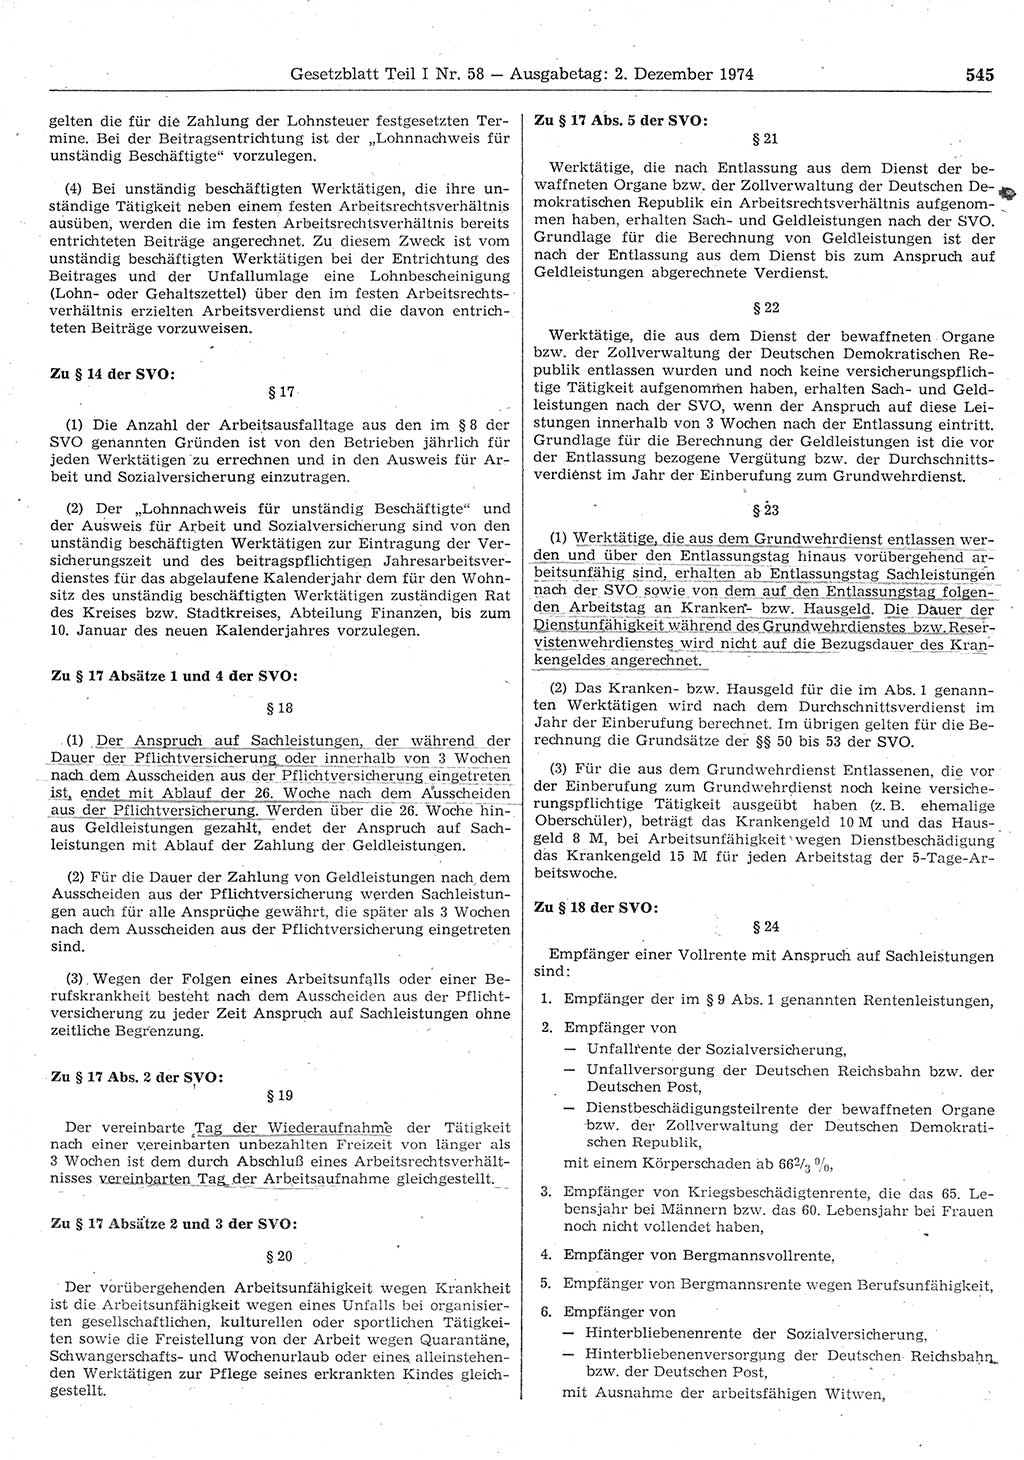 Gesetzblatt (GBl.) der Deutschen Demokratischen Republik (DDR) Teil Ⅰ 1974, Seite 545 (GBl. DDR Ⅰ 1974, S. 545)